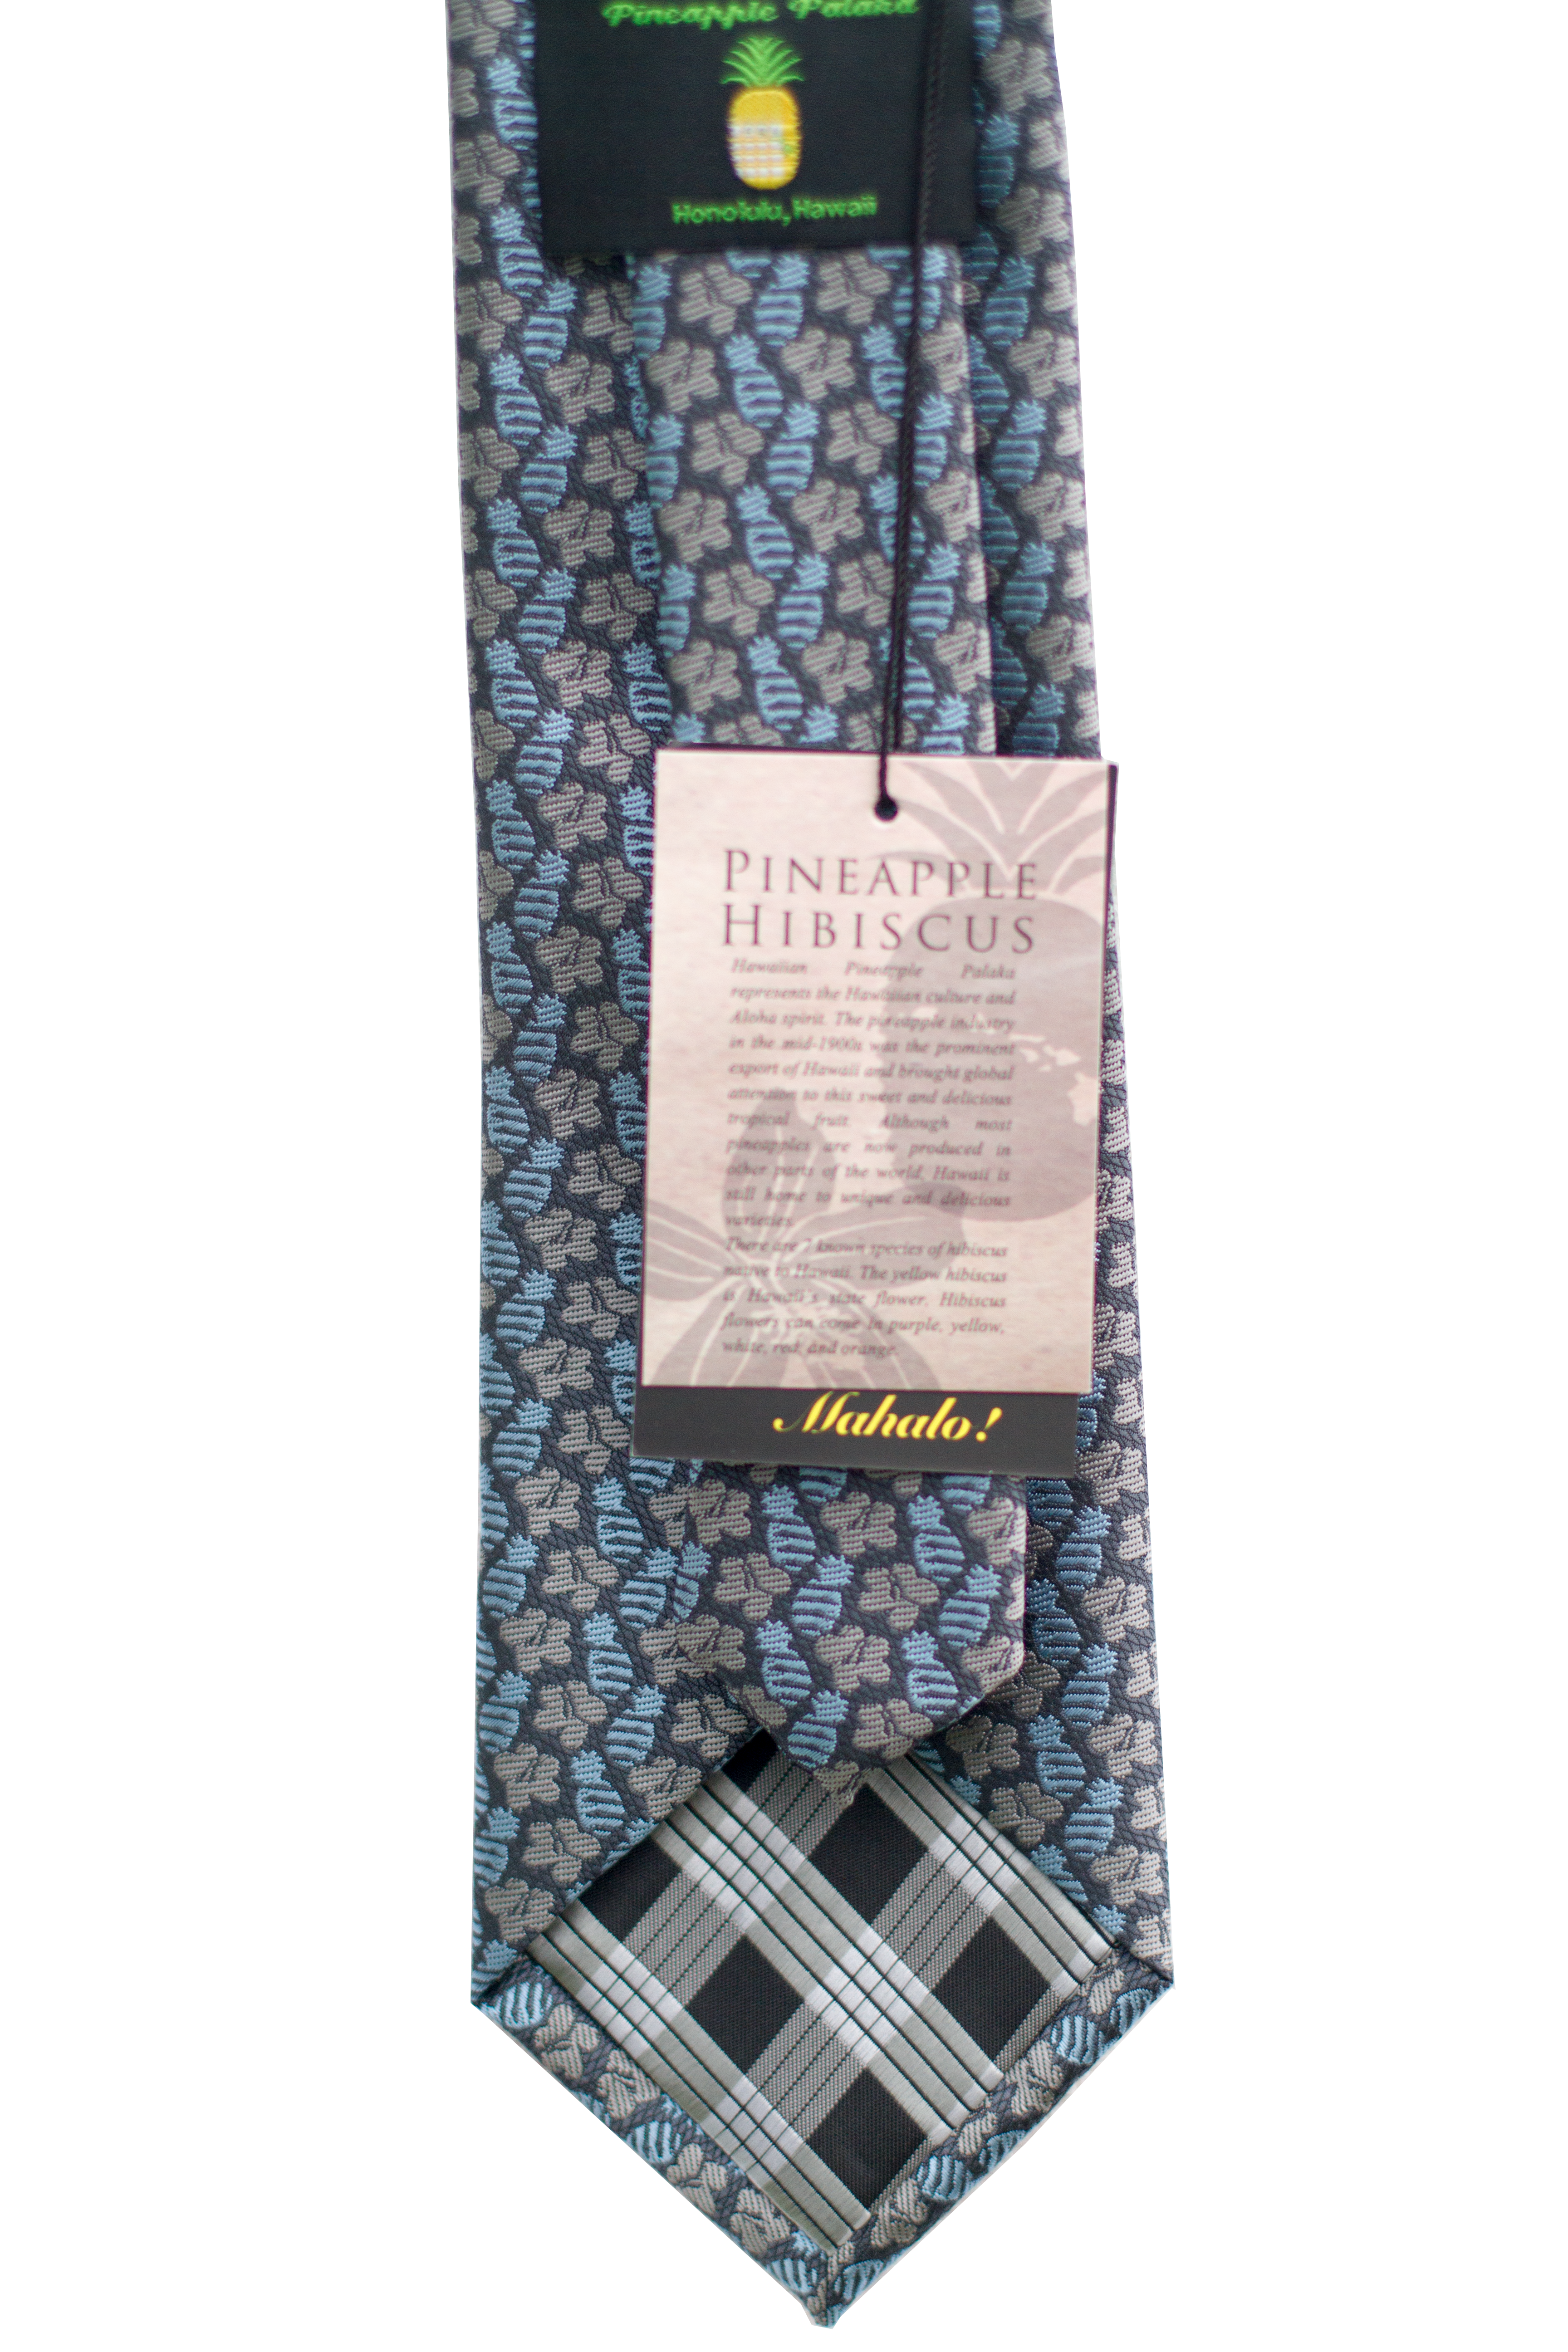 Pineapple Hibiscus Tight Blue/Grey Modern Necktie